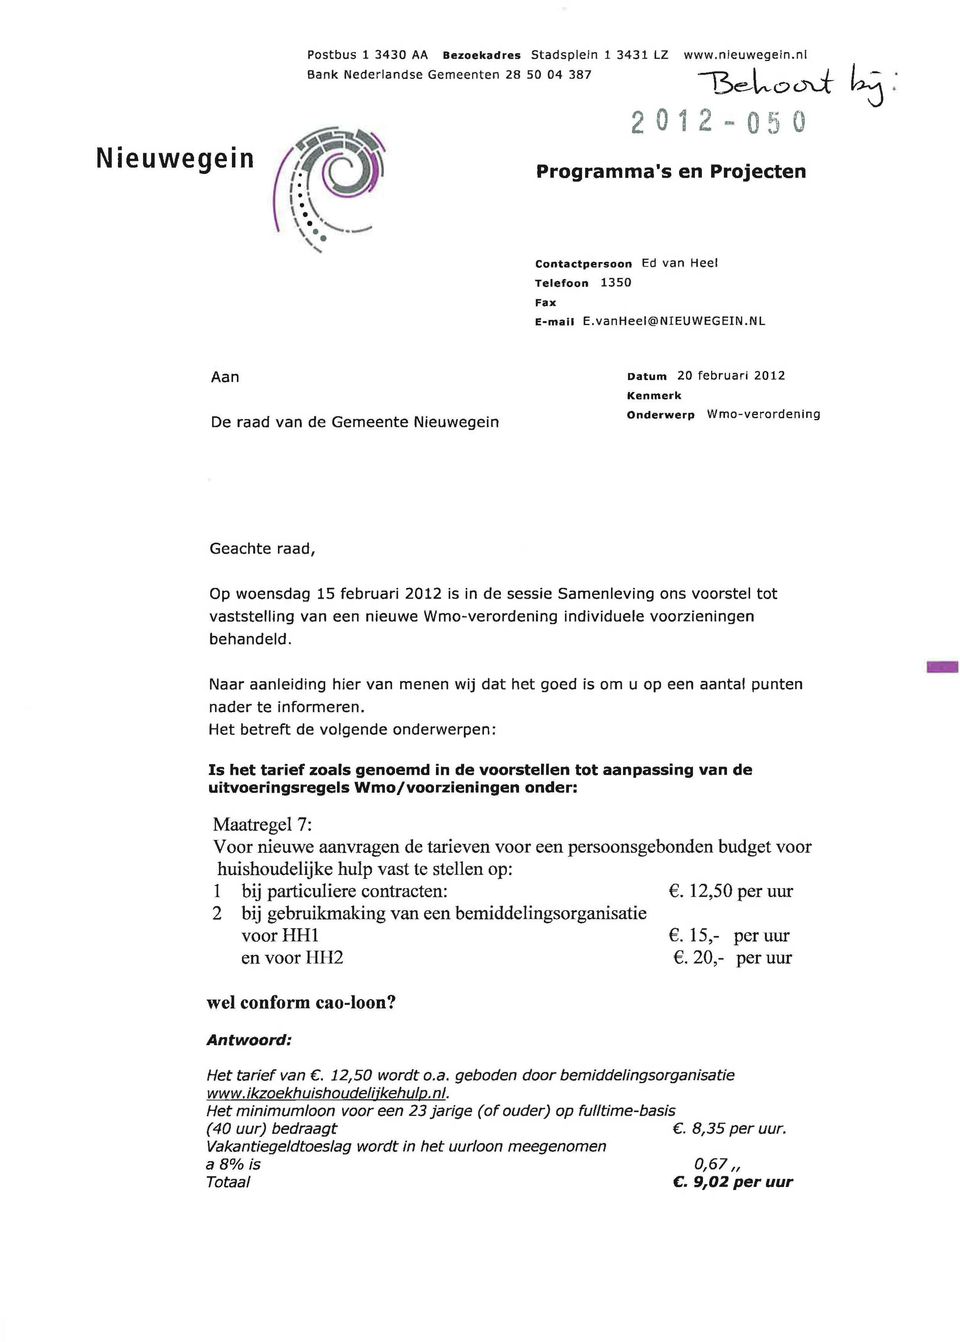 NL Aan De raad van de Gemeente Nieuwegein Datum 20 februari 2012 Onderwerp Wmoverordening Geachte raad, Op woensdag 15 februari 2012 is in de sessie Samenleving ons voorstel tot vaststelling van een